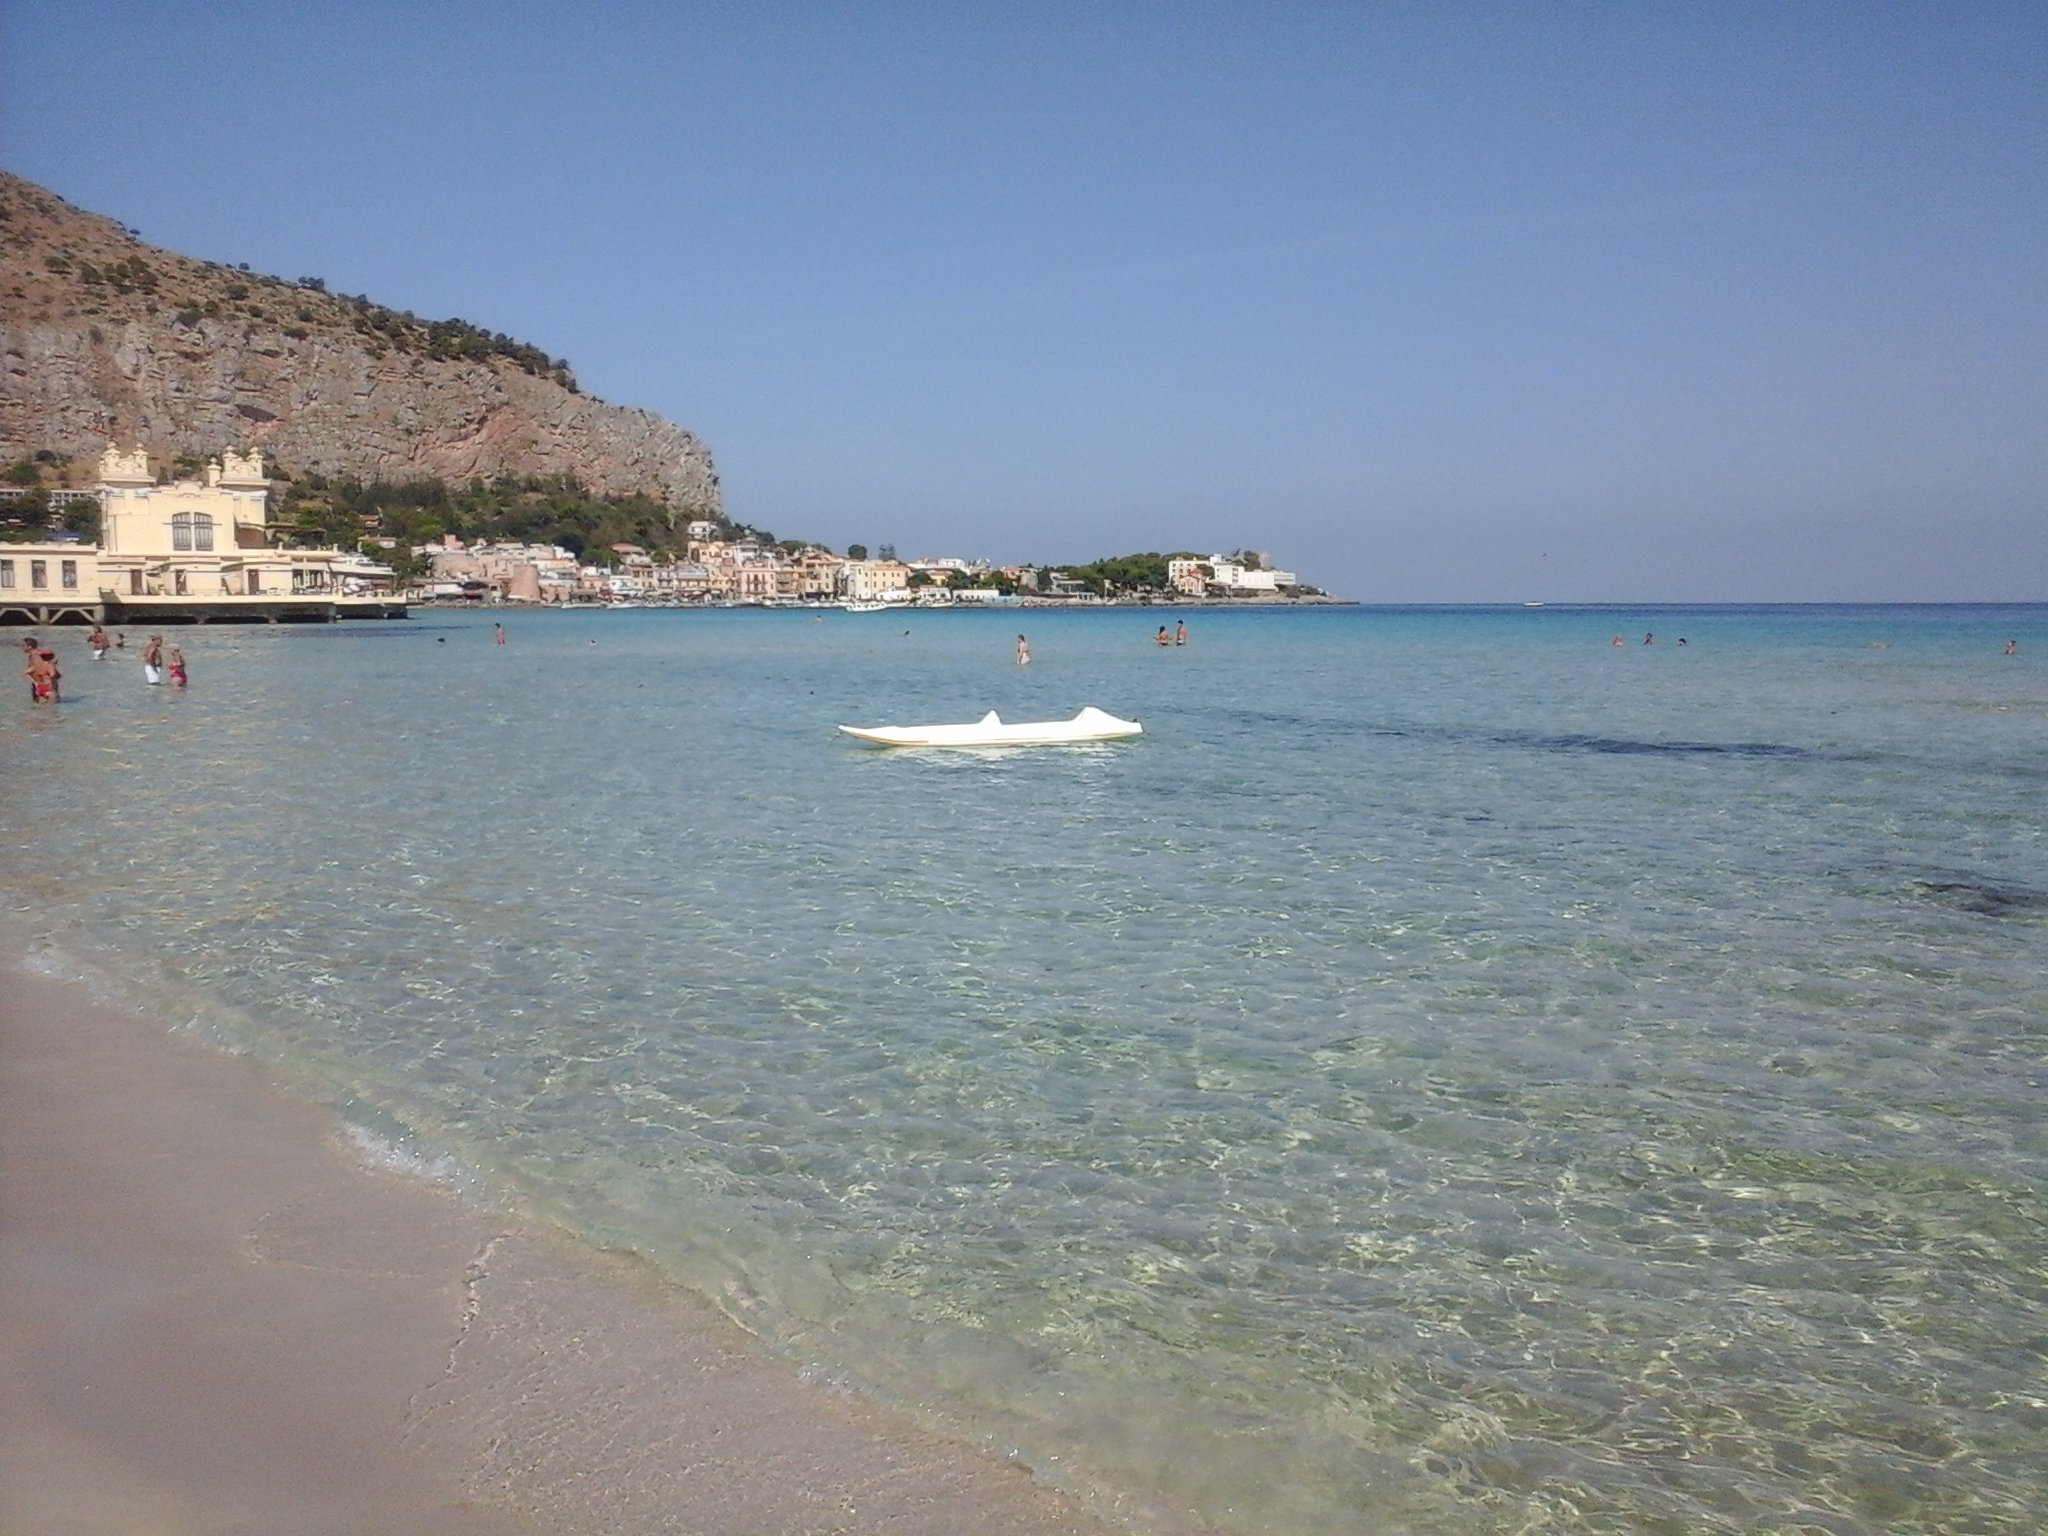 Post successivo: Best beaches 2023: le top 15 spiagge siciliane più amate quest’anno